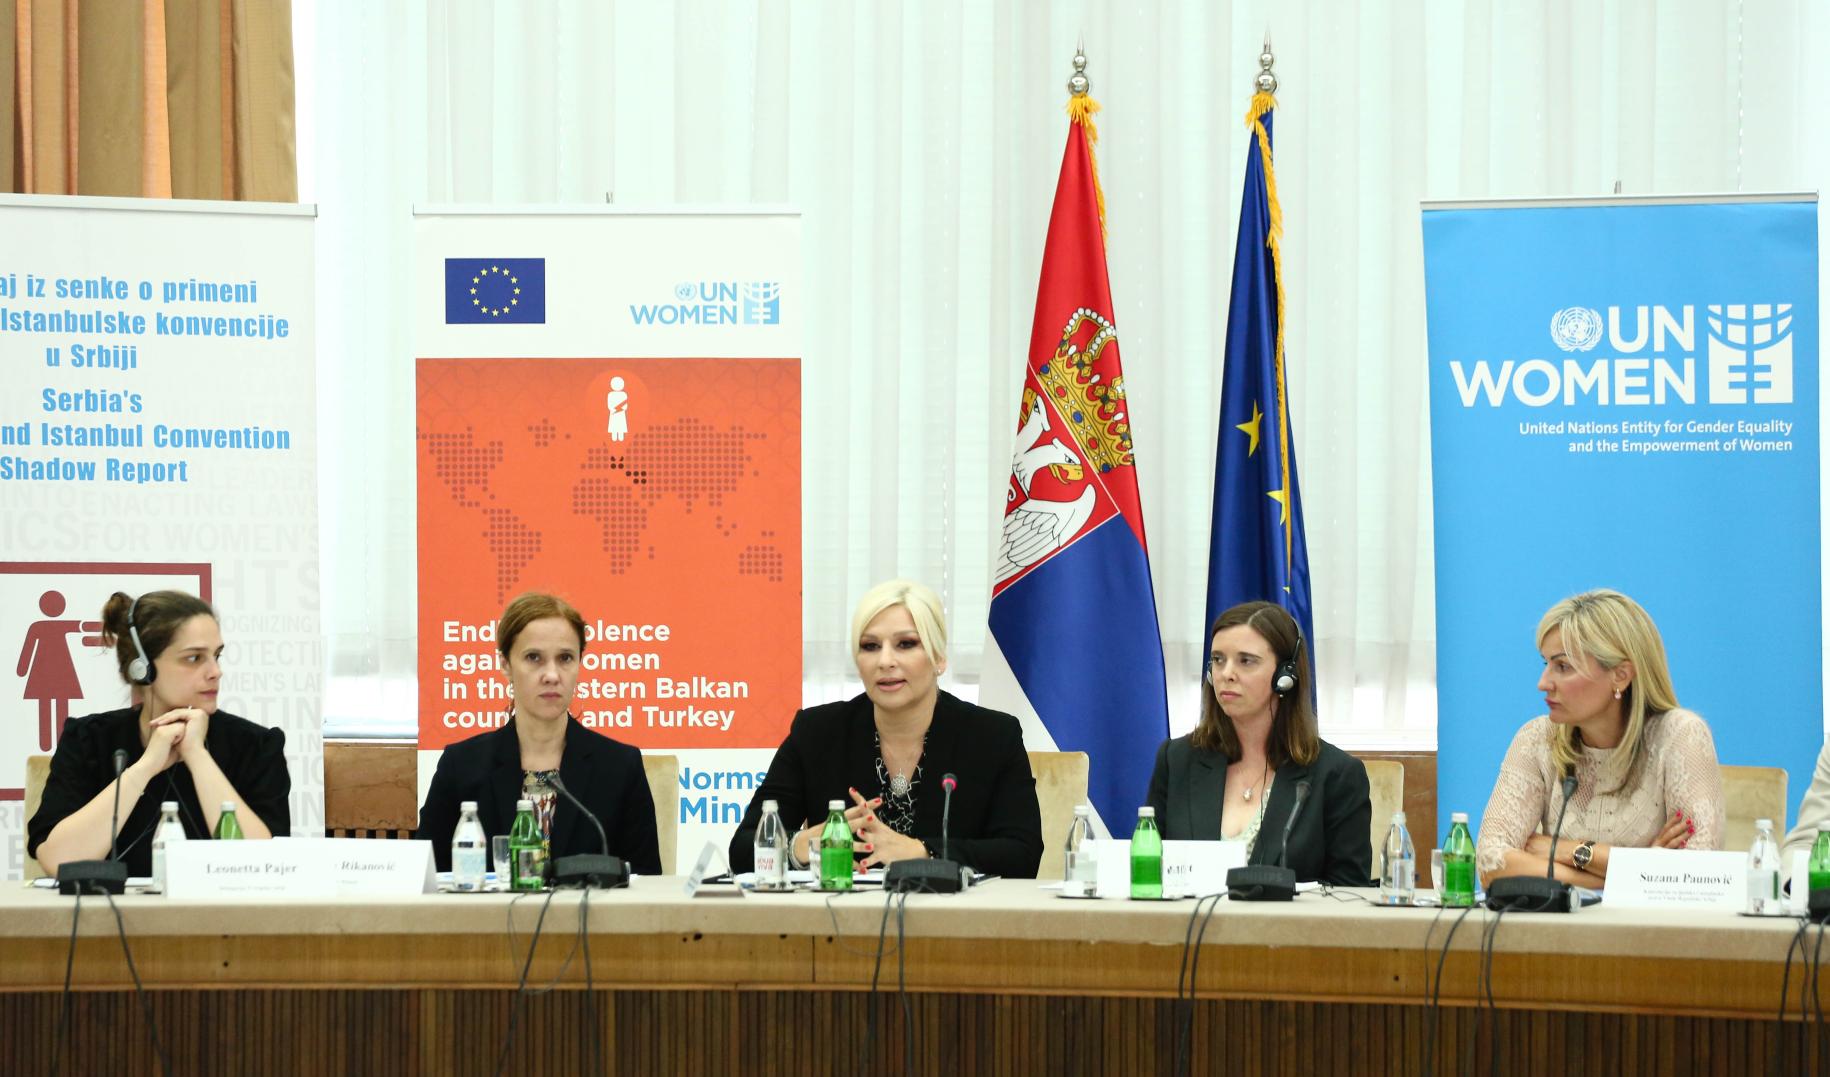 Cinco mujeres celebran una conferencia de prensa frente a la bandera de ONU-Mujeres y las banderas.